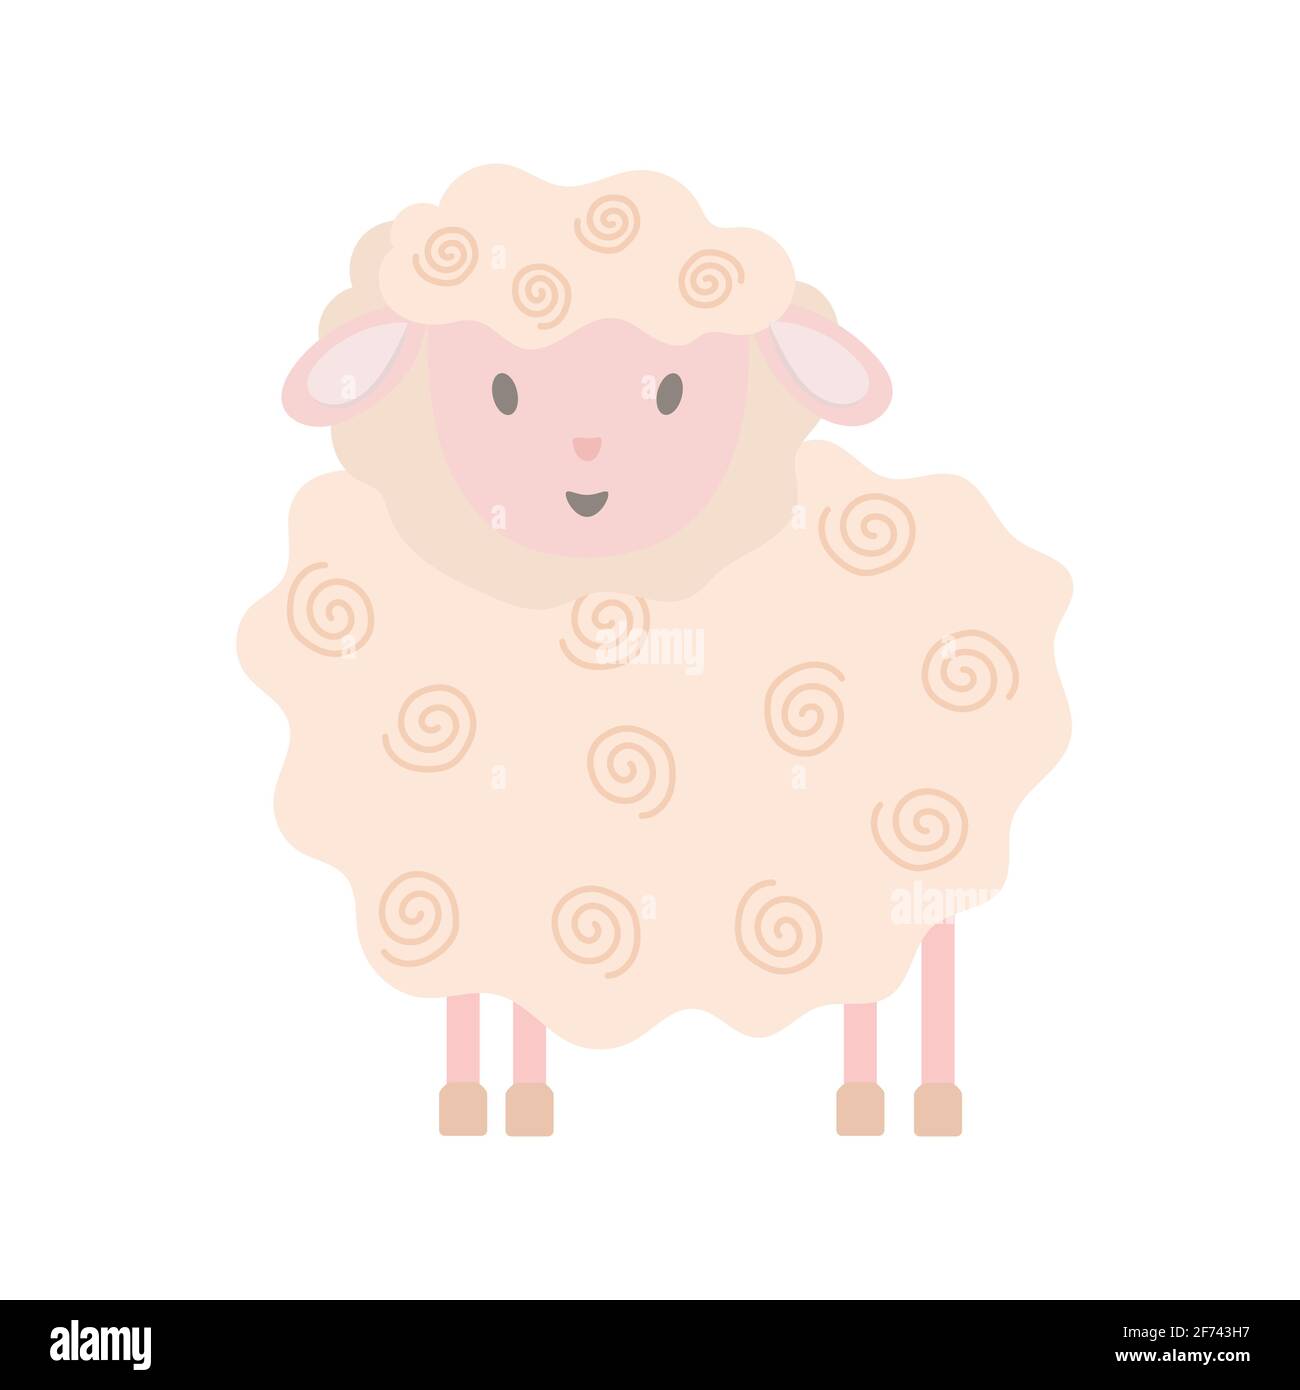 Kleine niedliche lustige Schafe in einfachen Cartoon-Stil Vektor-Illustration für Kinder, Bauernhof rosa Tier Grußkarte Design für Einladung, Geburtstagsfeier, Kinder Urlaub Dekor Stock Vektor